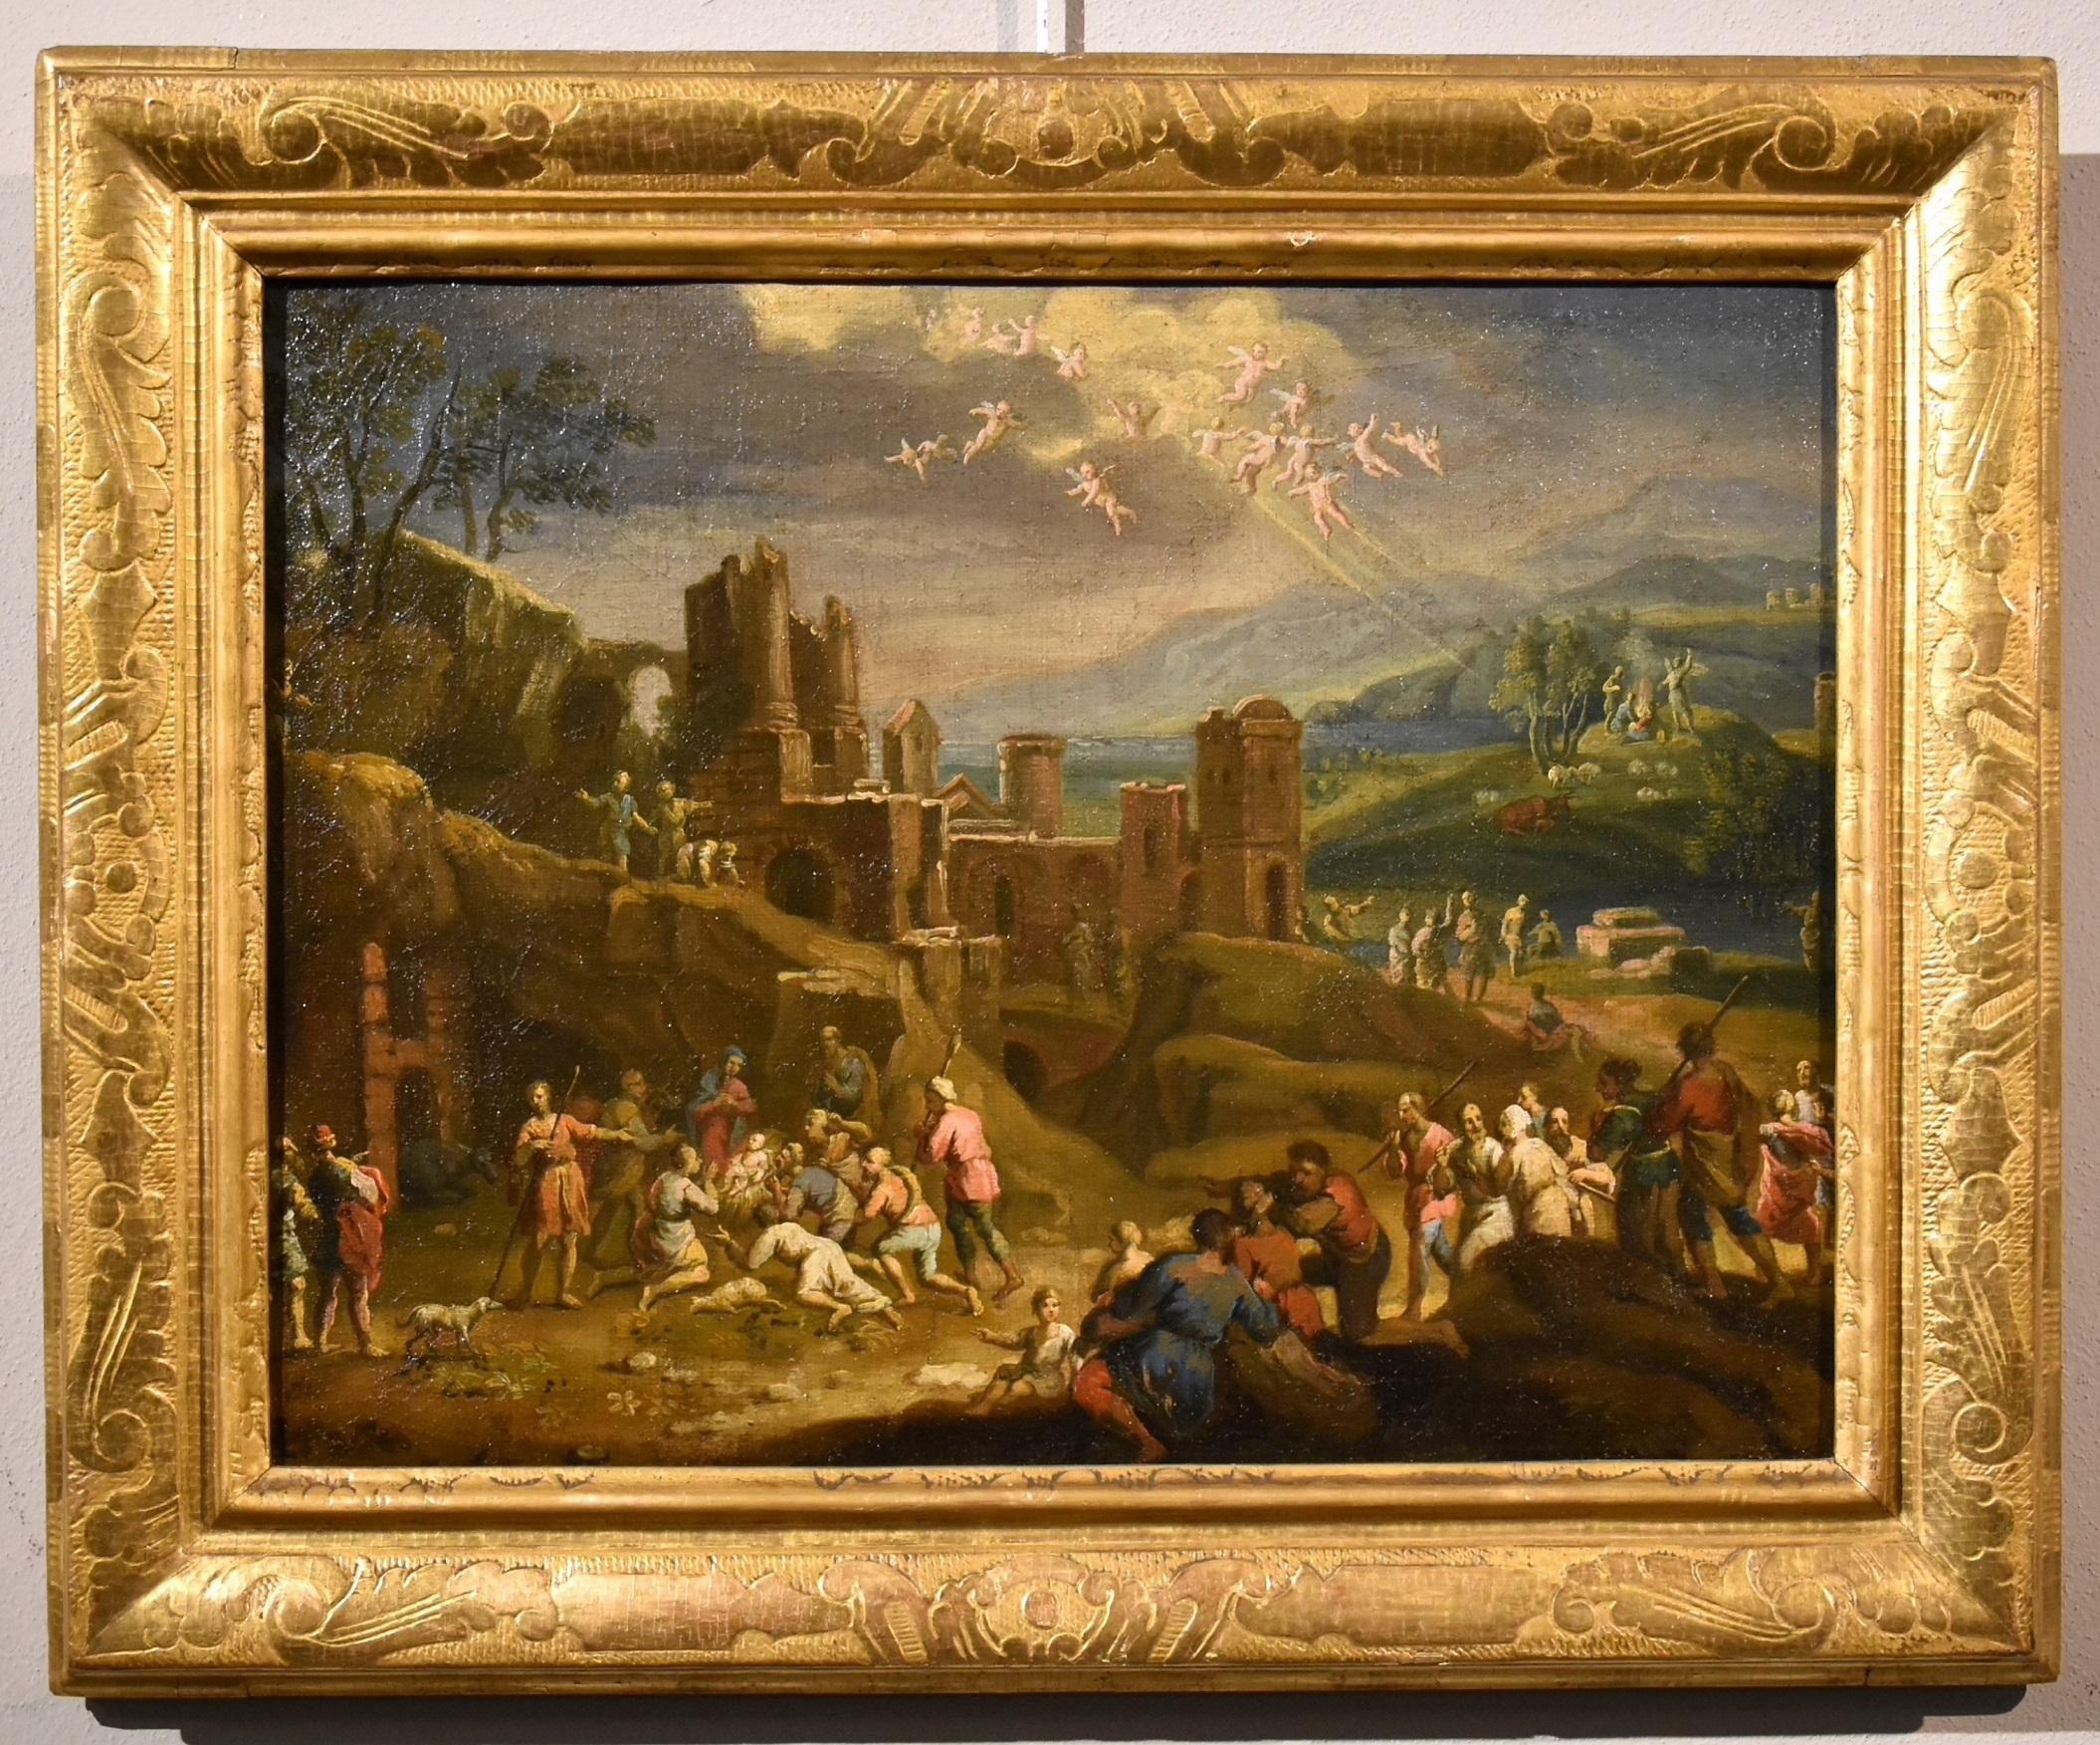 Landscape Painting Scipione Compagni, or Compagno (Naples, about 1624 - after 1680) - Peinture religieuse - Paysage natif - Huile sur toile - Maître ancien 17ème siècle italien